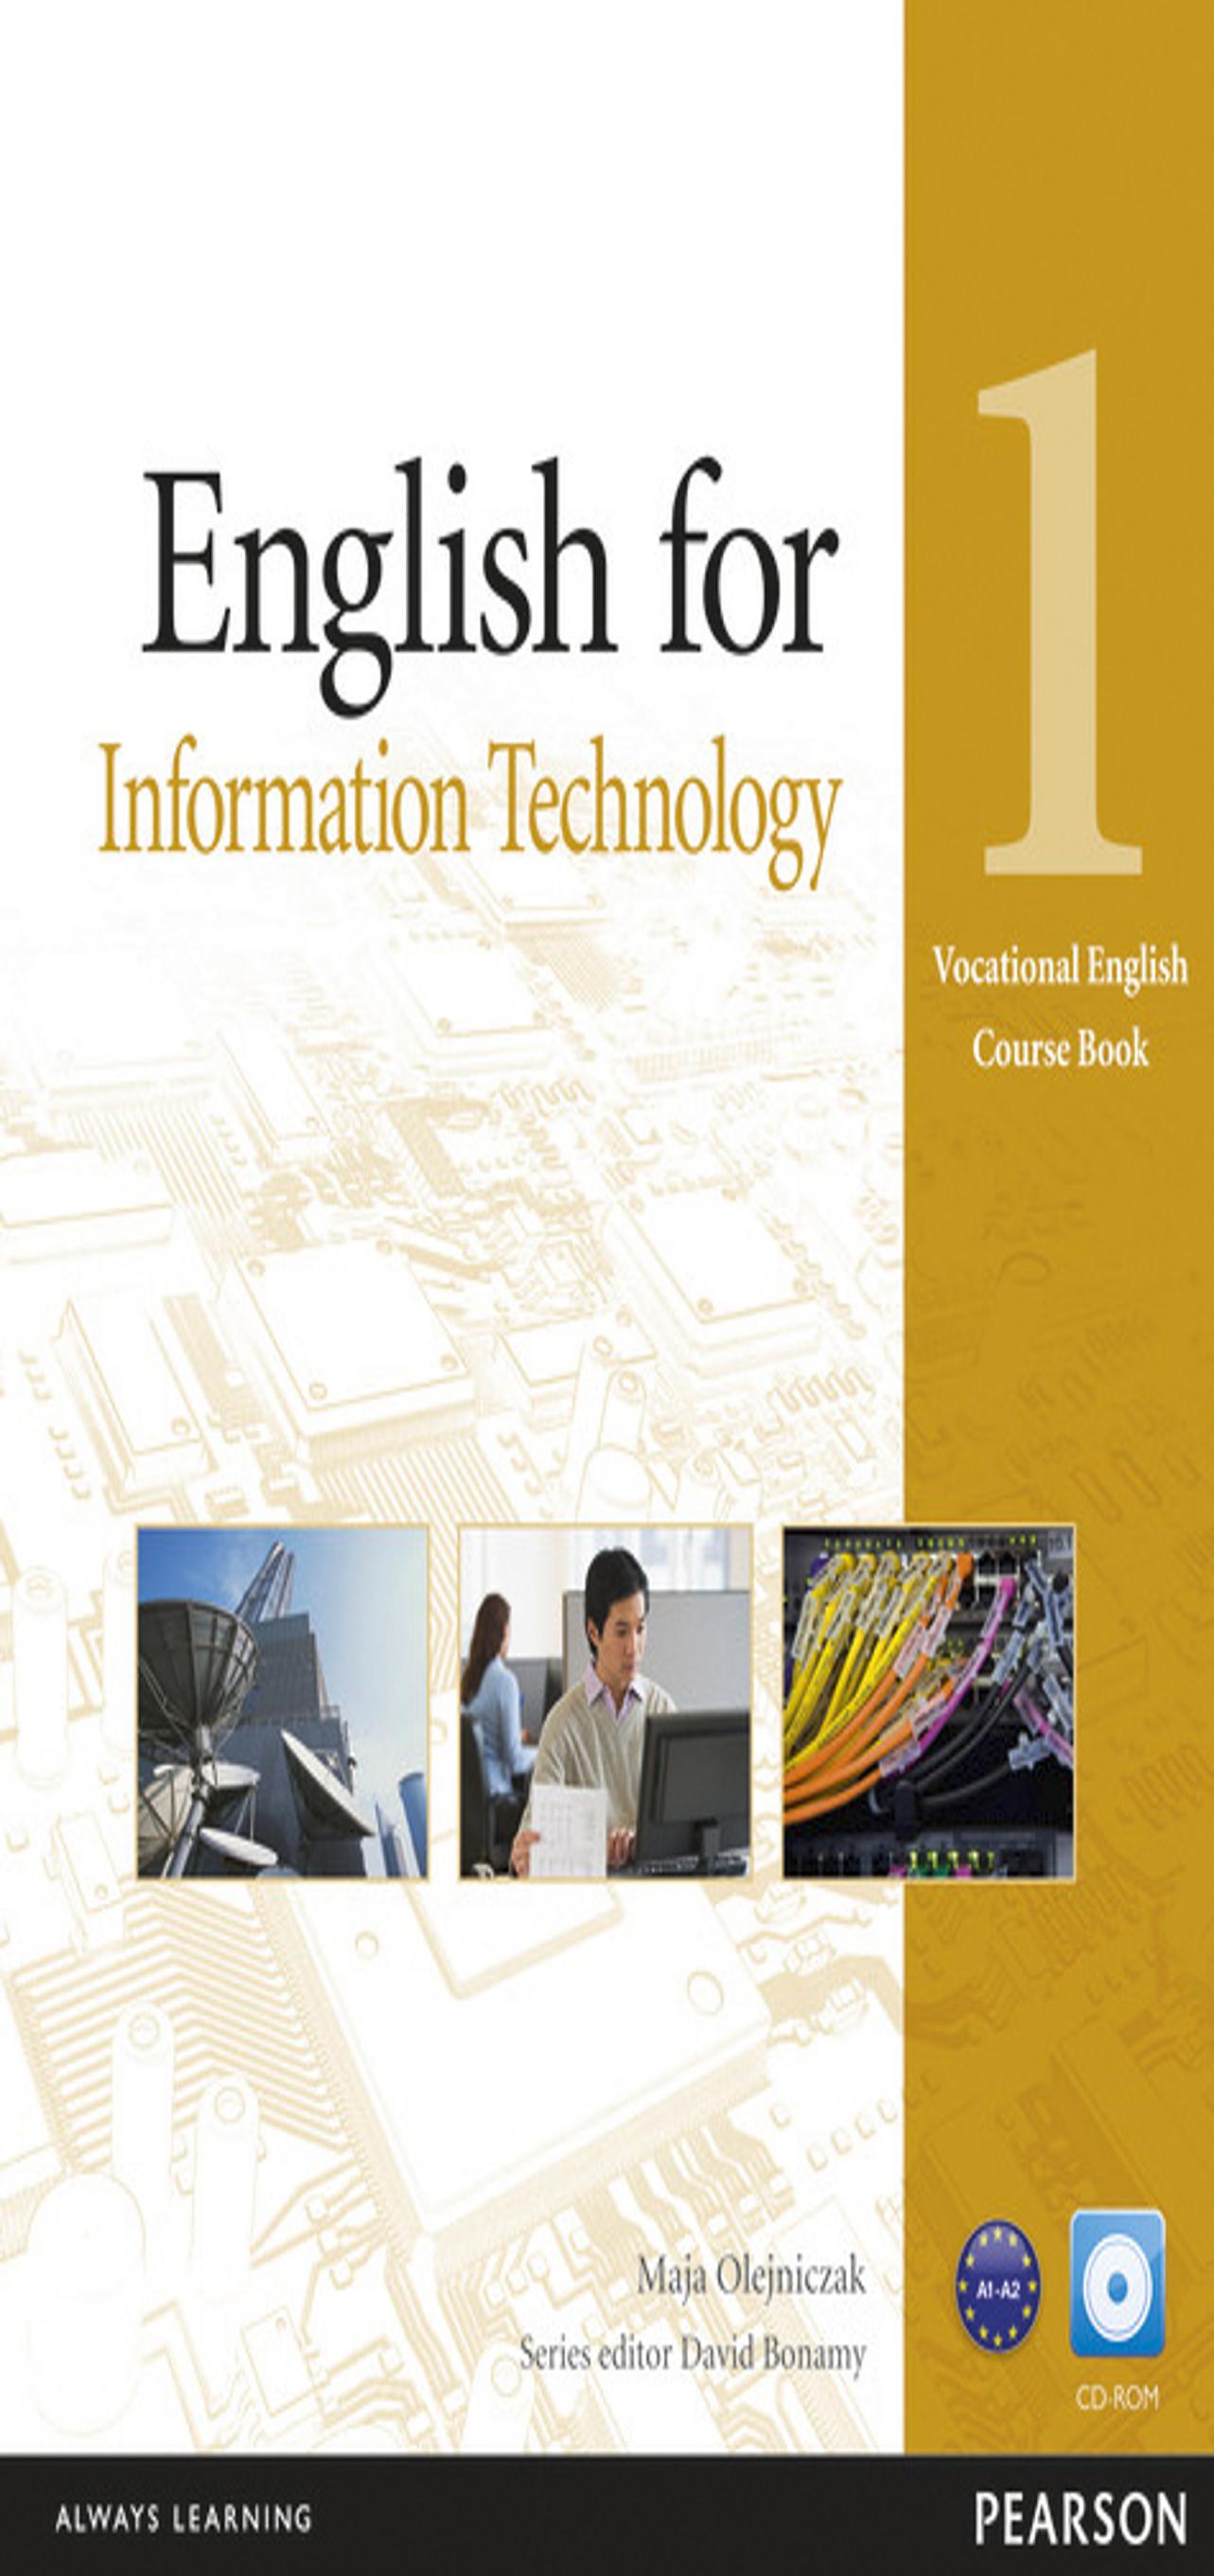 Librería　INFORMATION　ENGLISH　SB　CD　FOR　TECHNOLOGY　IDIOMATIKA